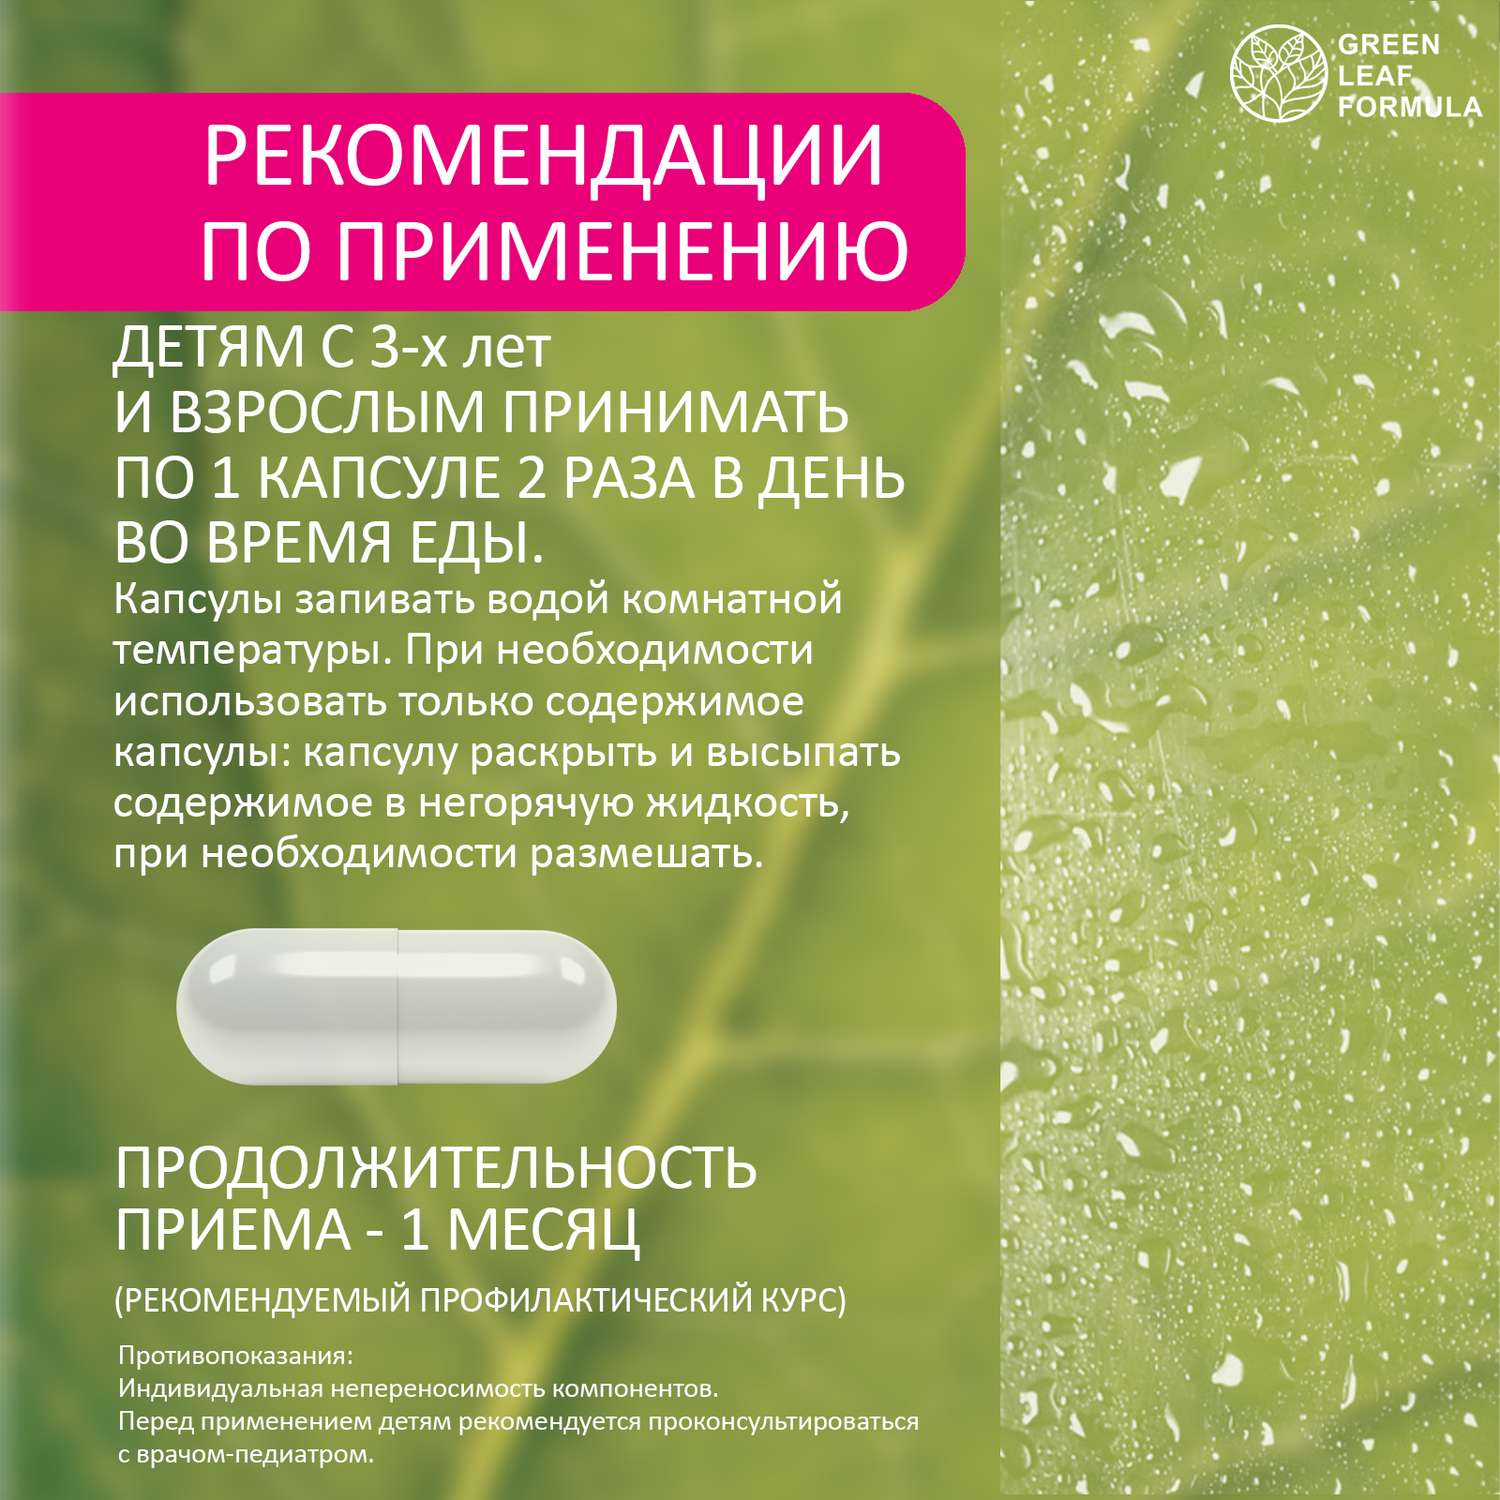 Детский пробиотик Green Leaf Formula витаминный комплекс для детей от 3 лет 2 банки по 60 капсул - фото 10